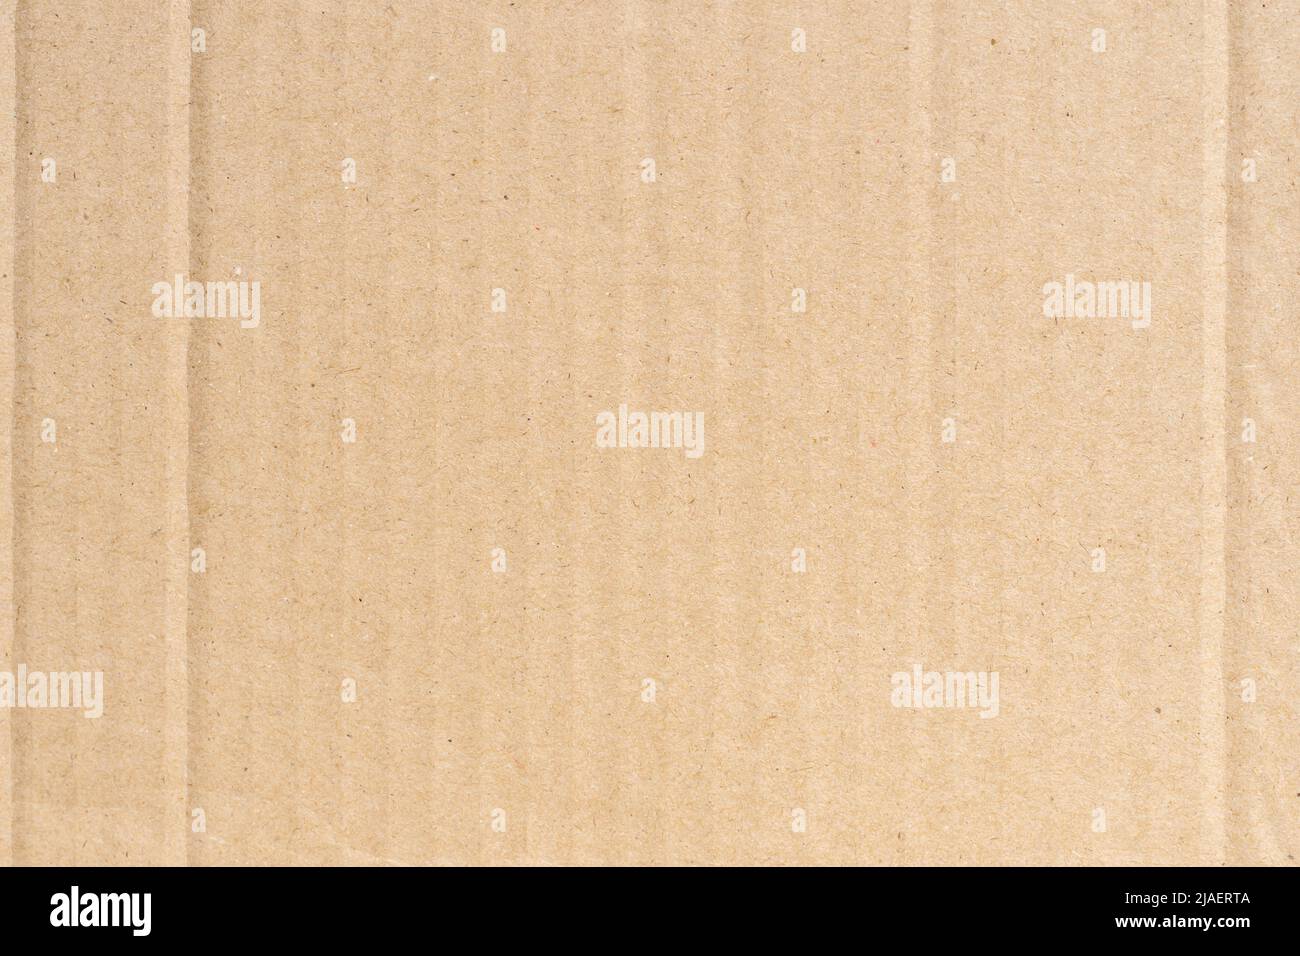 Caja de regalo de cartón marrón abierta con papel triturado aislado en  superficie blanca